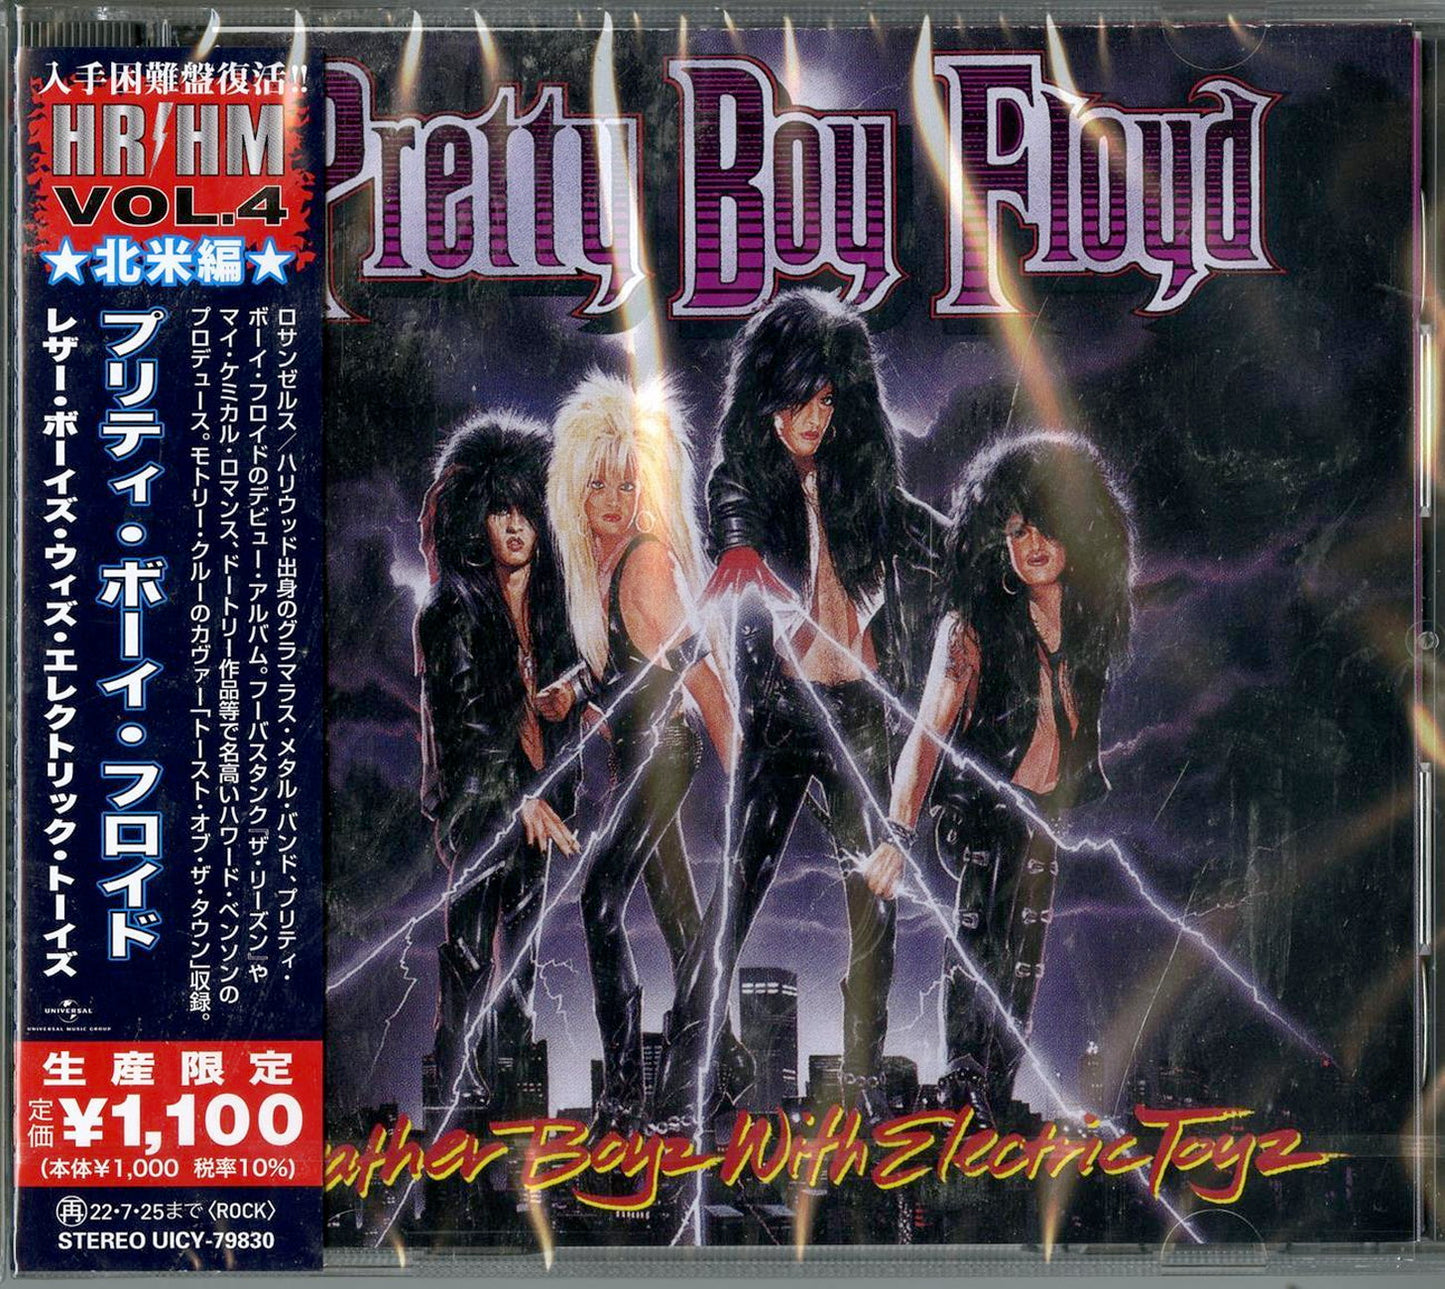 Pretty Boy Floyd - Leather Boyz With Electric Toyz - Japan  CD Bonus Track Limited Edition